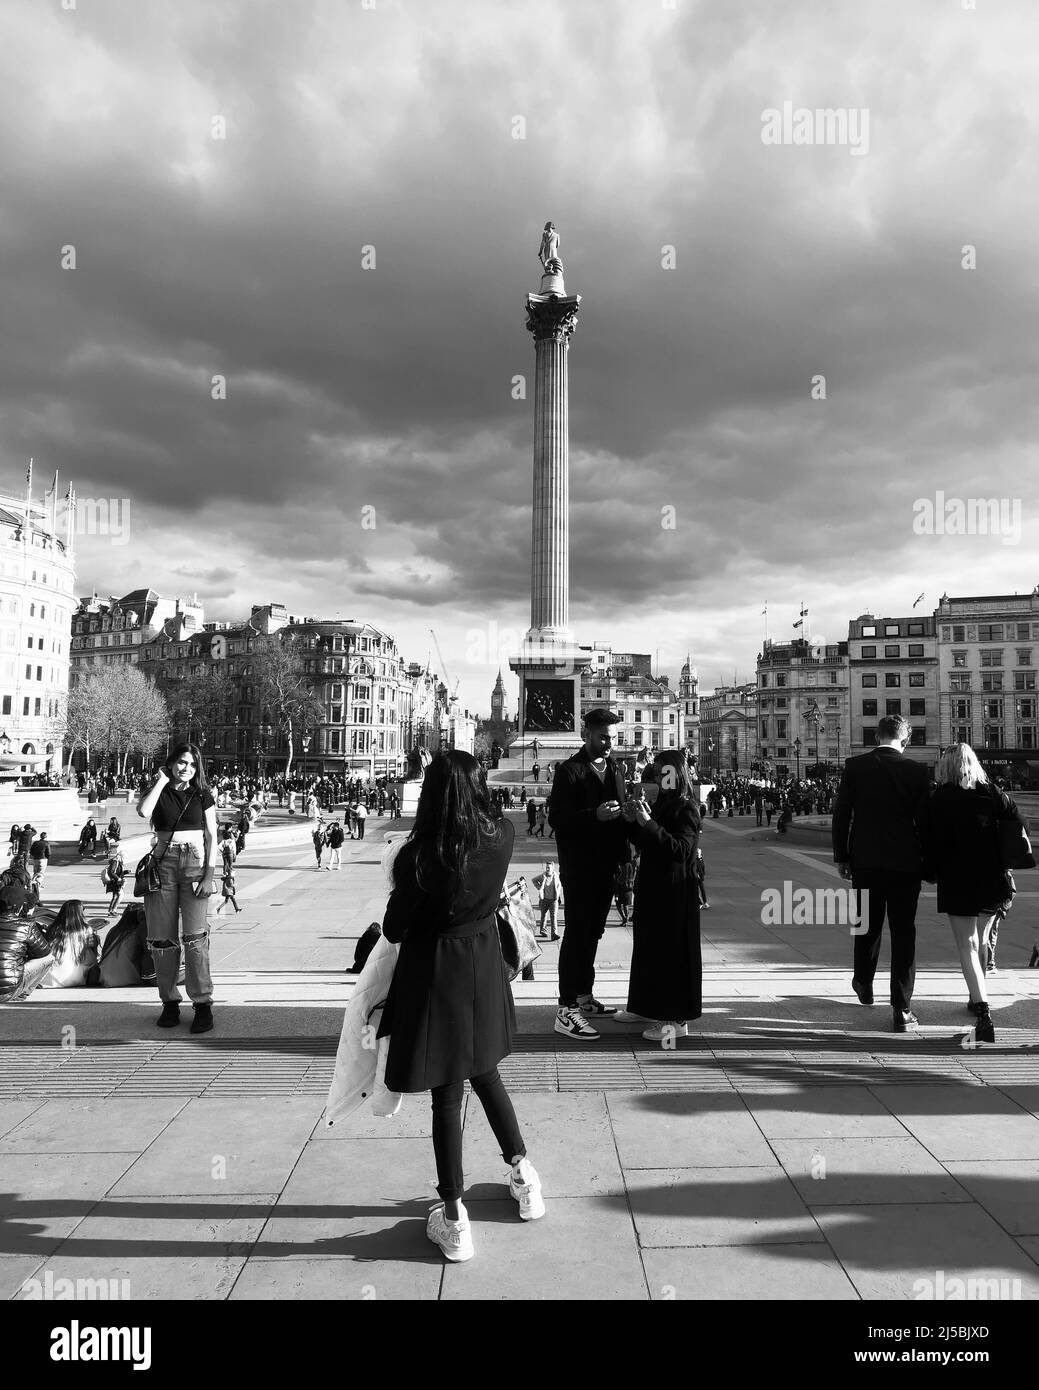 Touristes ayant des photos prises à Trafalgar Square avec Nelsons colonne derrière et ciel spectaculaire au-dessus. Monochrome. Londres. Banque D'Images